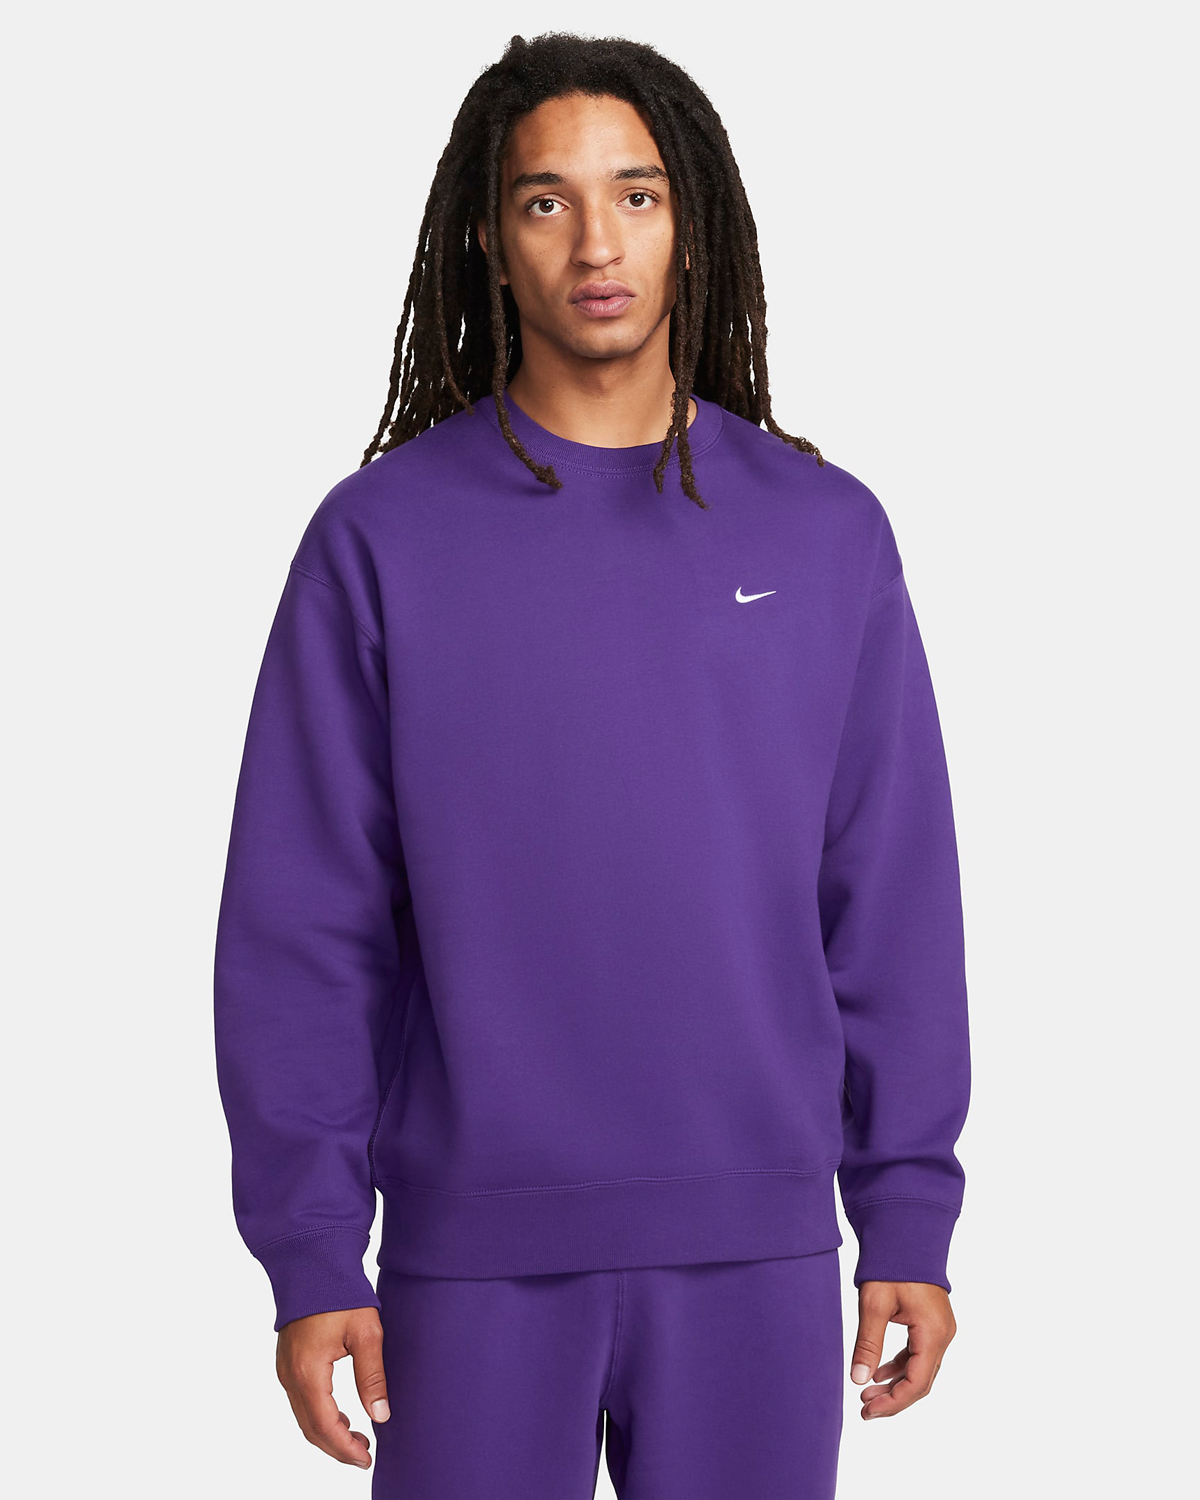 Nike-Solo-Swoosh-Fleece-Crew-Sweatshirt-Field-Purple